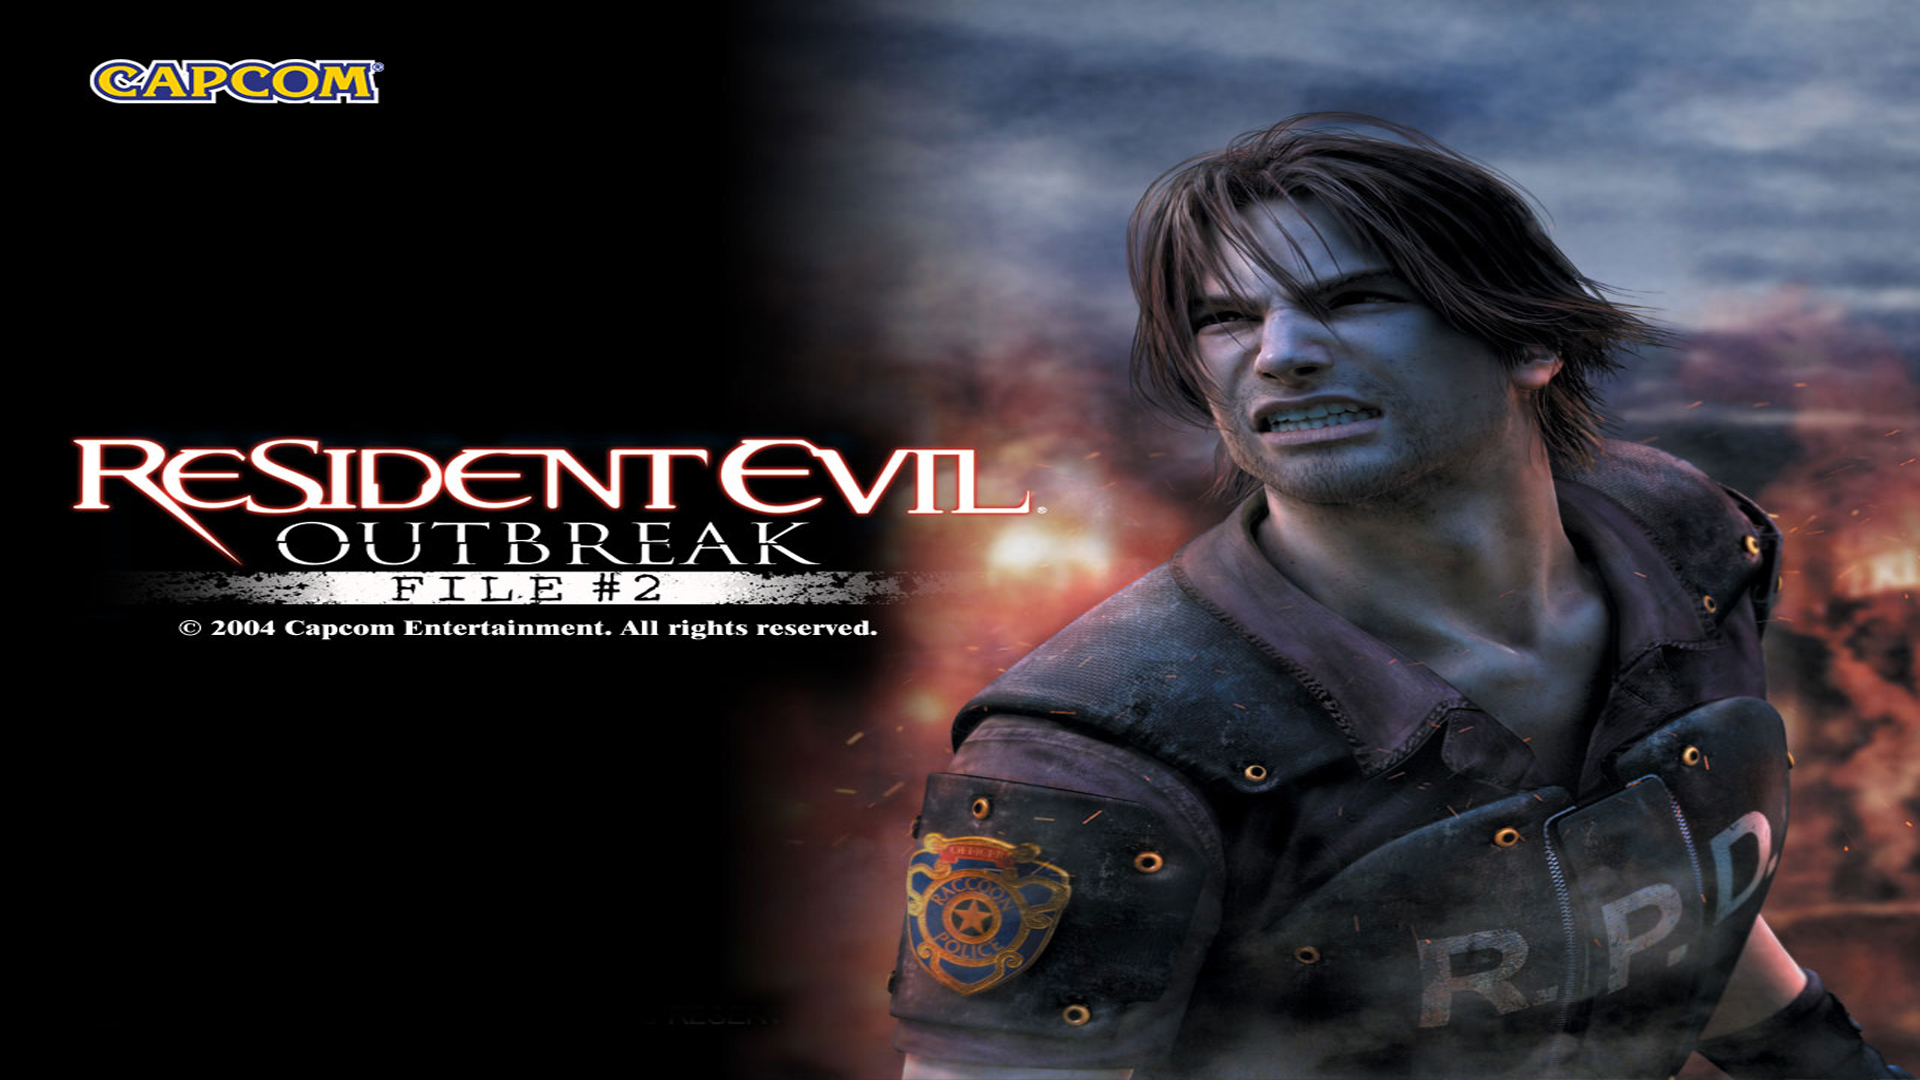 video game, resident evil outbreak: file #2, resident evil